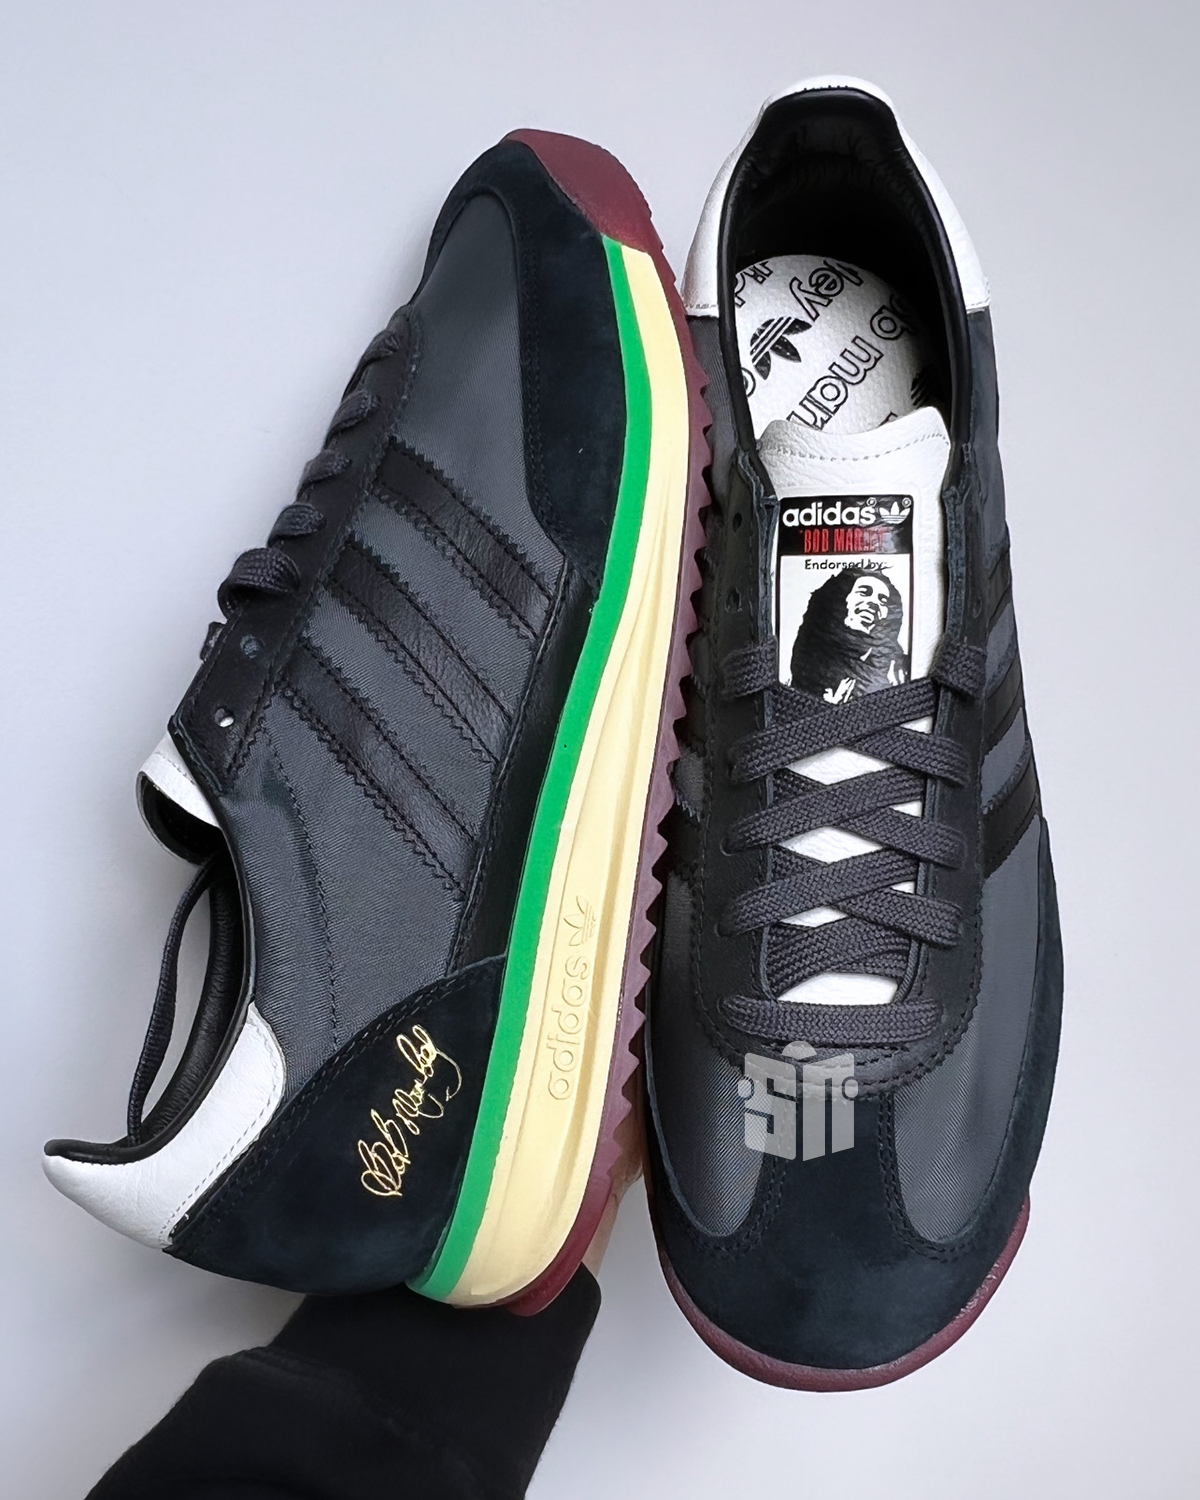 Bob Marley adidas nmd Sl72 Release